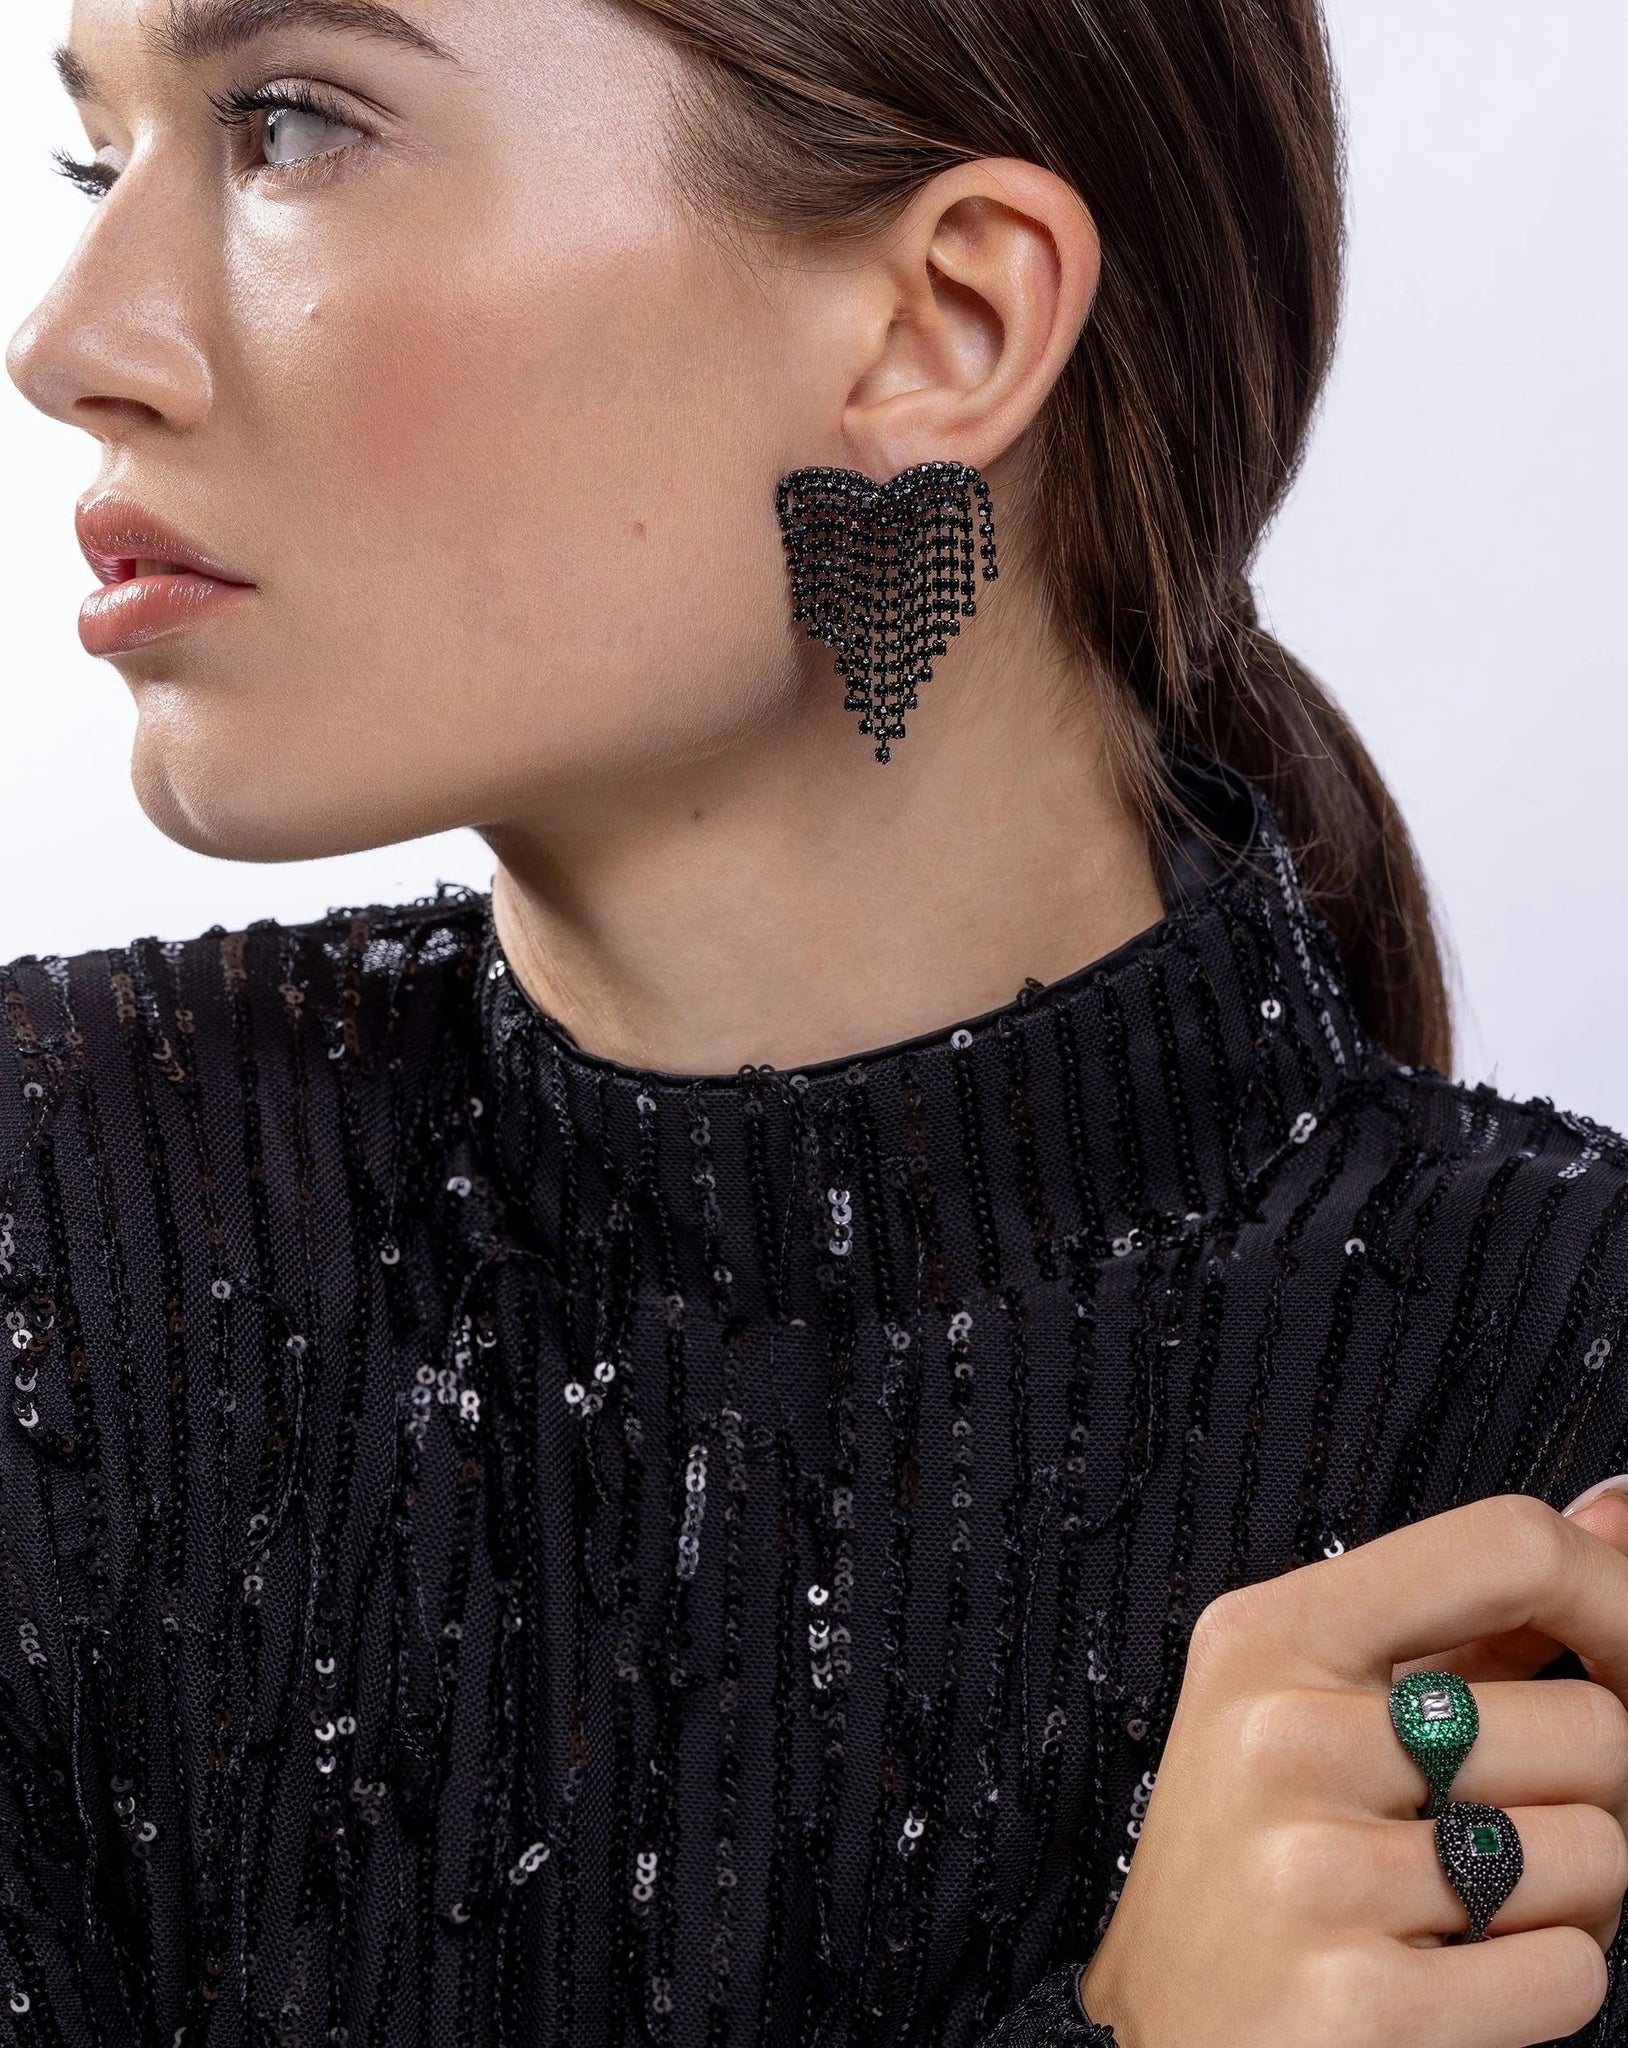 Fringe earrings by Crystal Haze